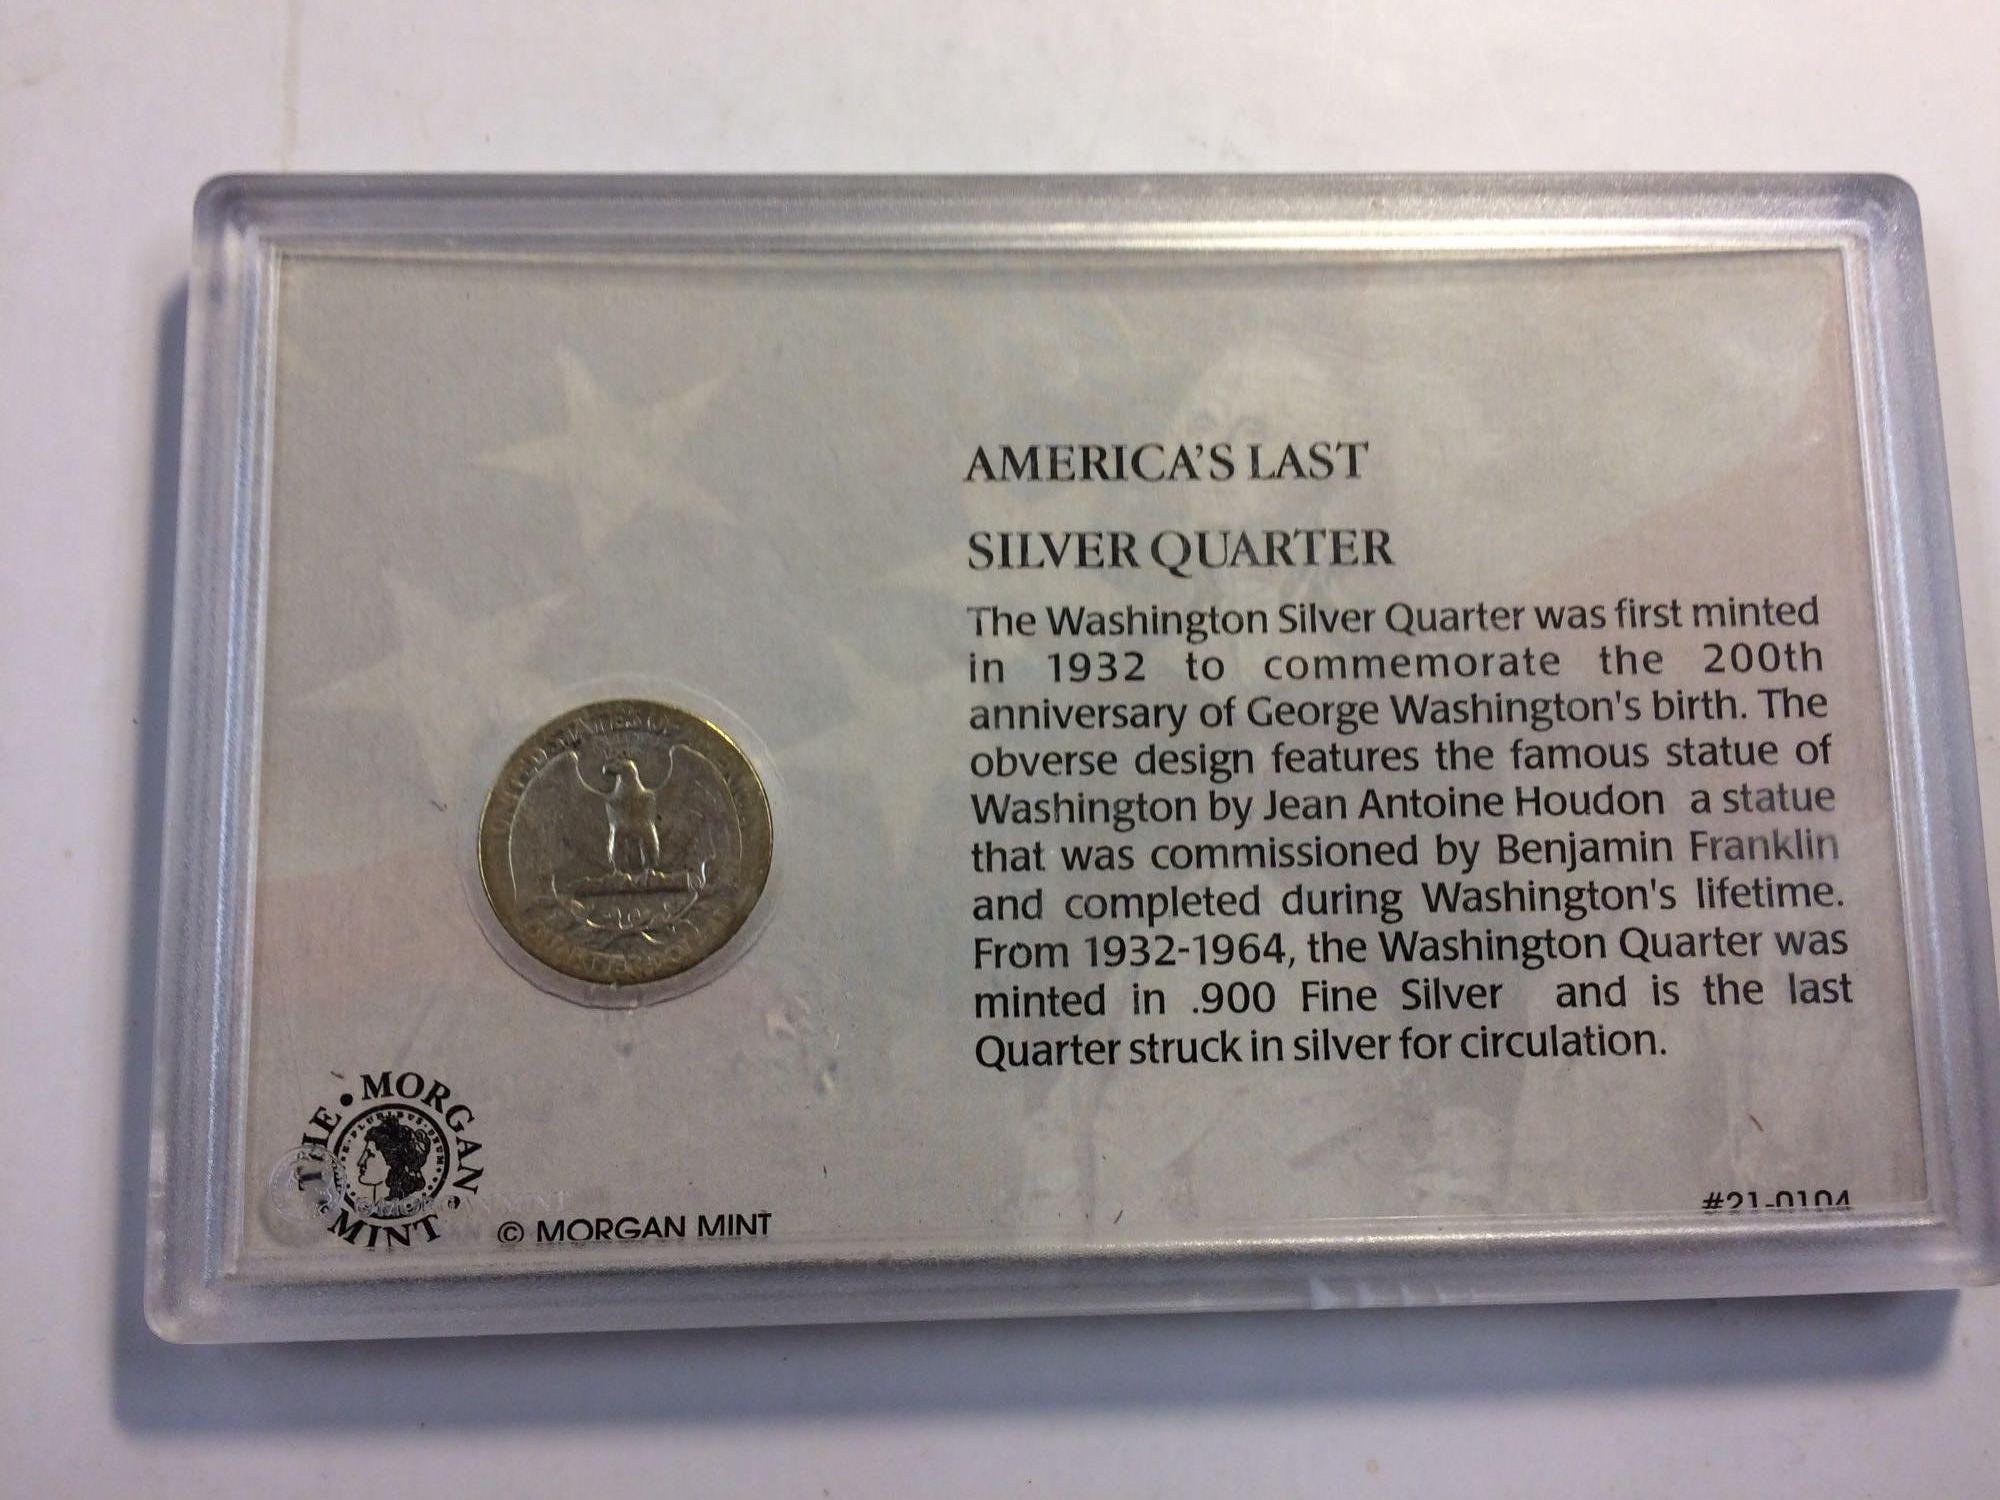 Americas last silver quarter plaque includes a 1943 quarter